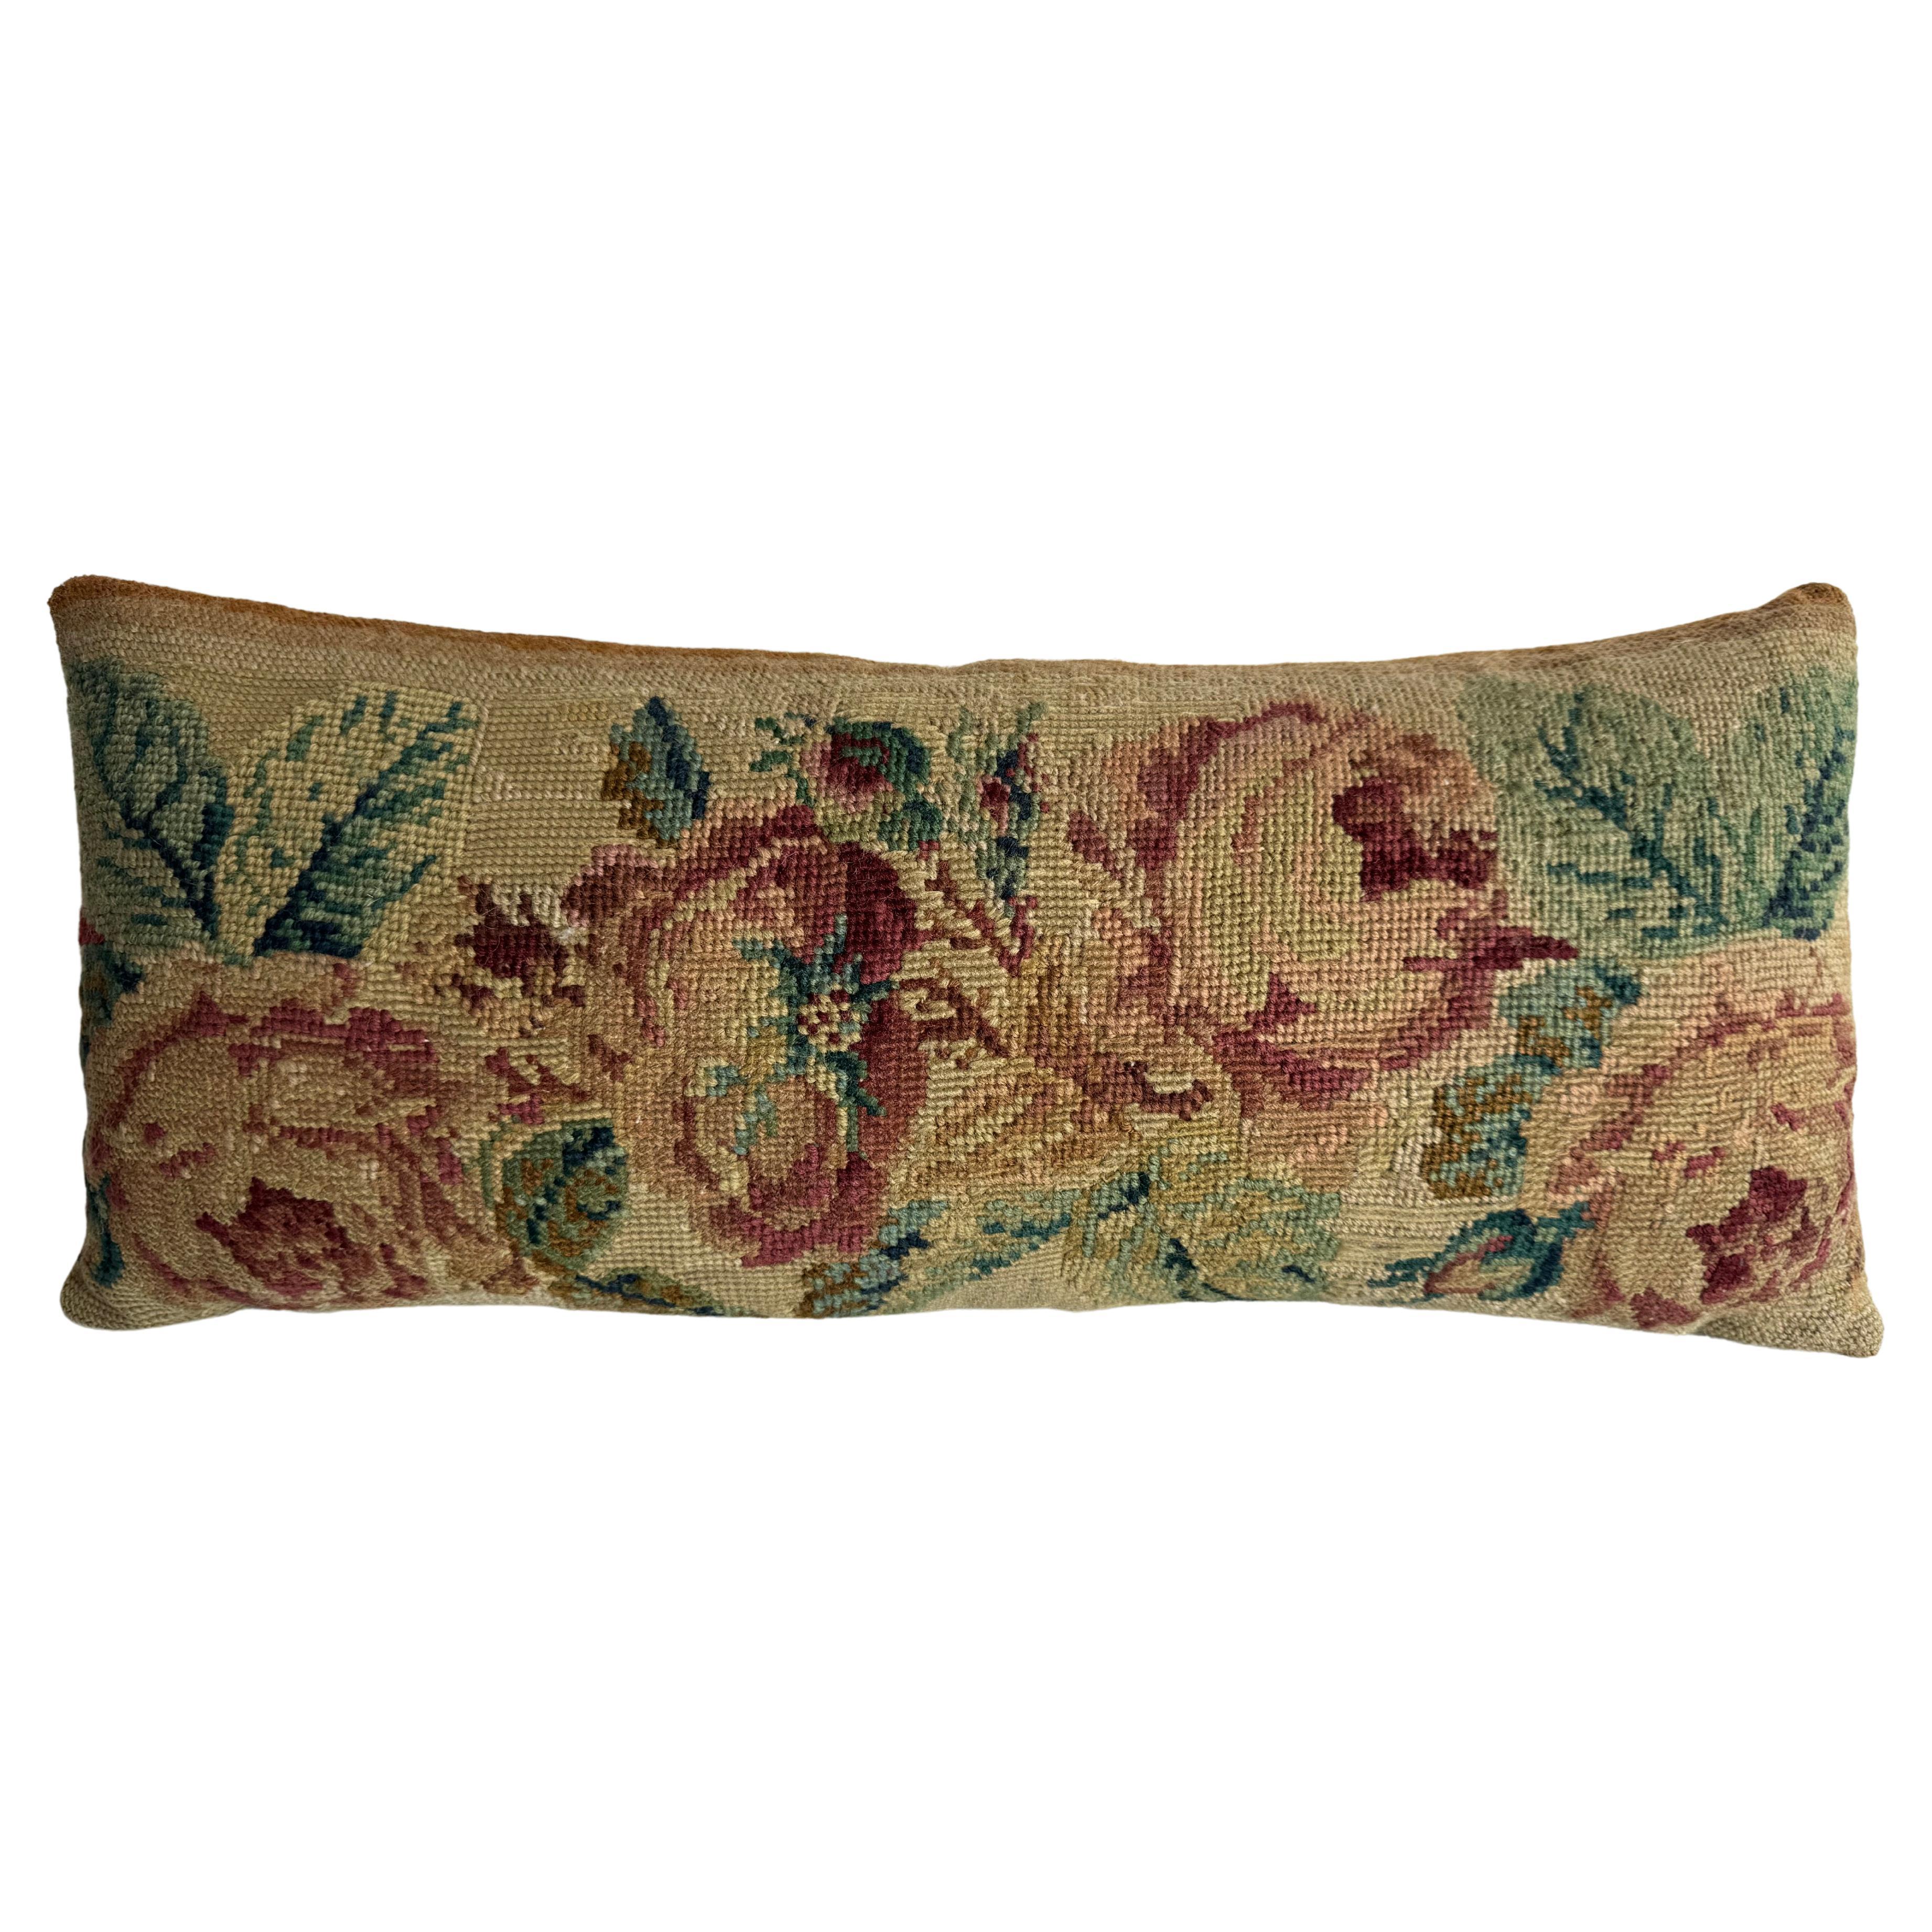 1850 English Needlework 20" x 9" Pillow